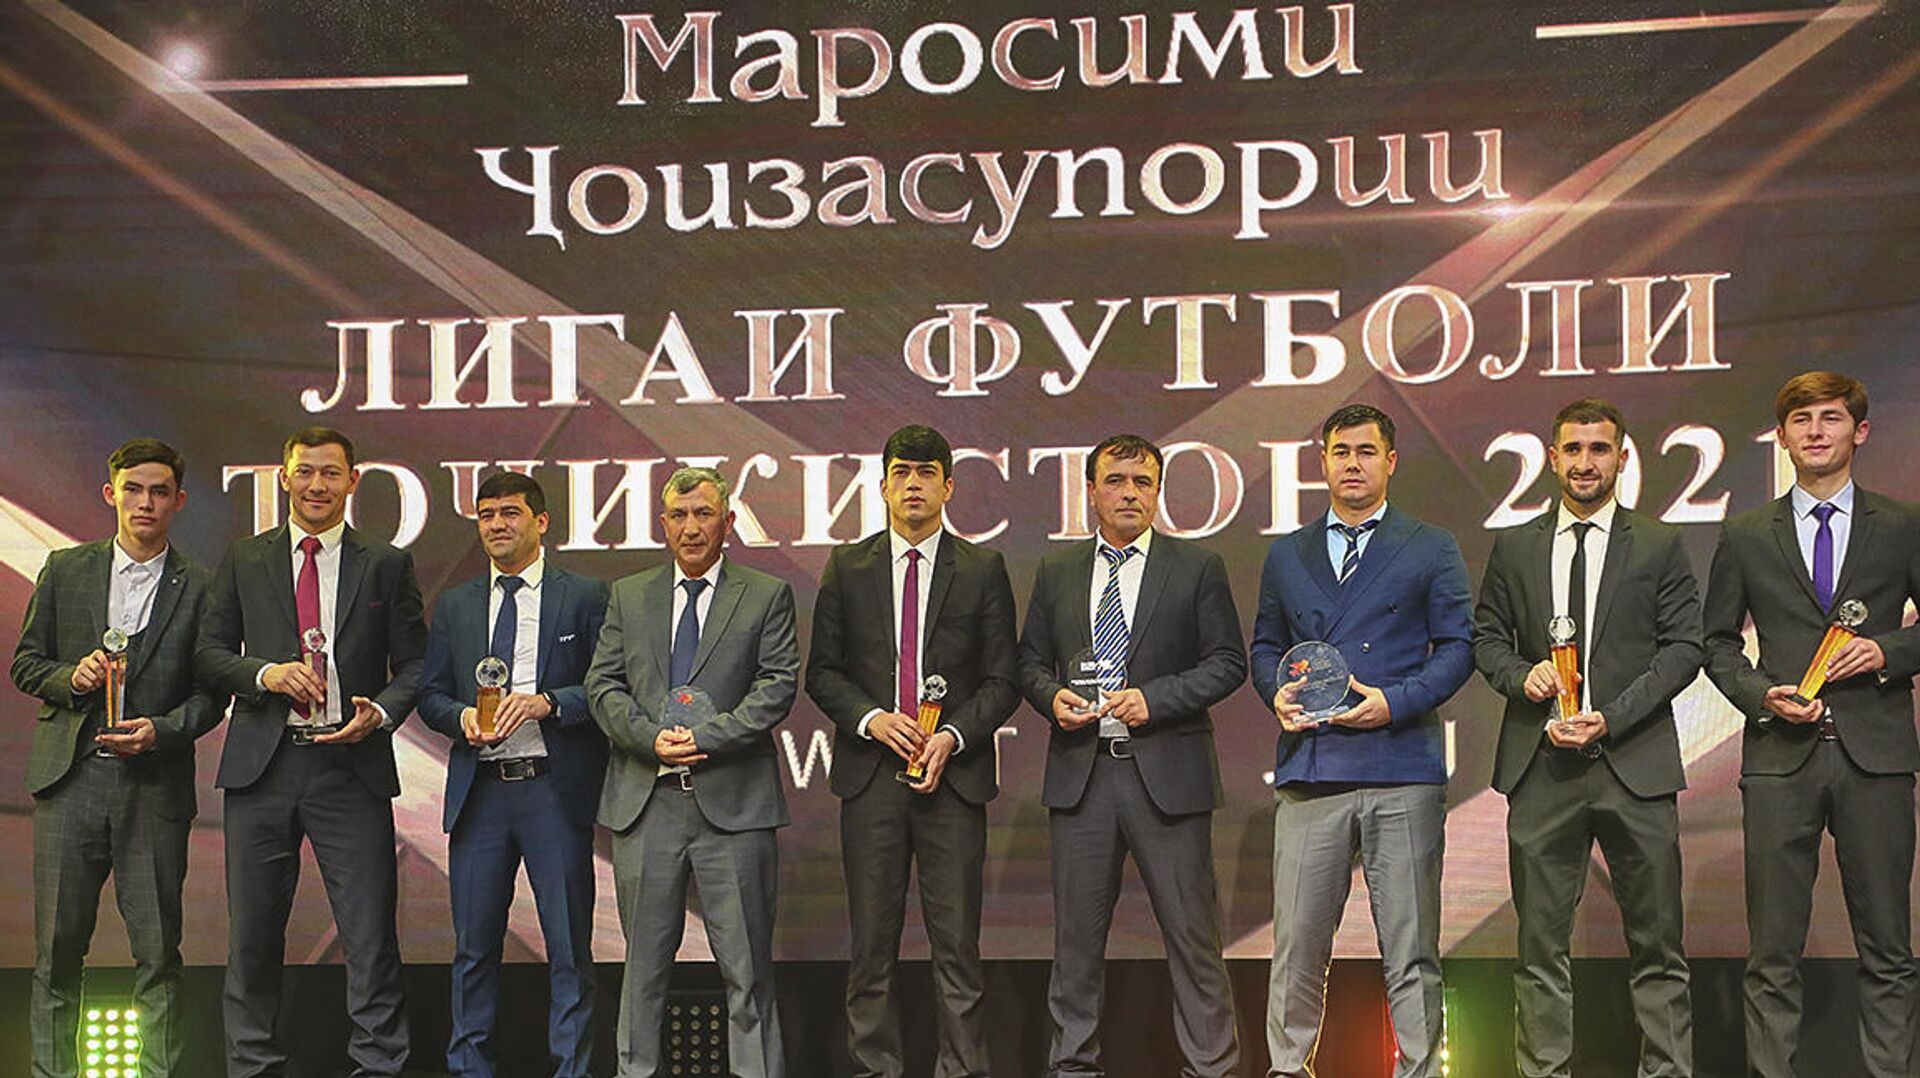  В Таджикистане наградили лучших футболистов и тренеров по итогам 2021 года - Sputnik Таджикистан, 1920, 26.12.2021